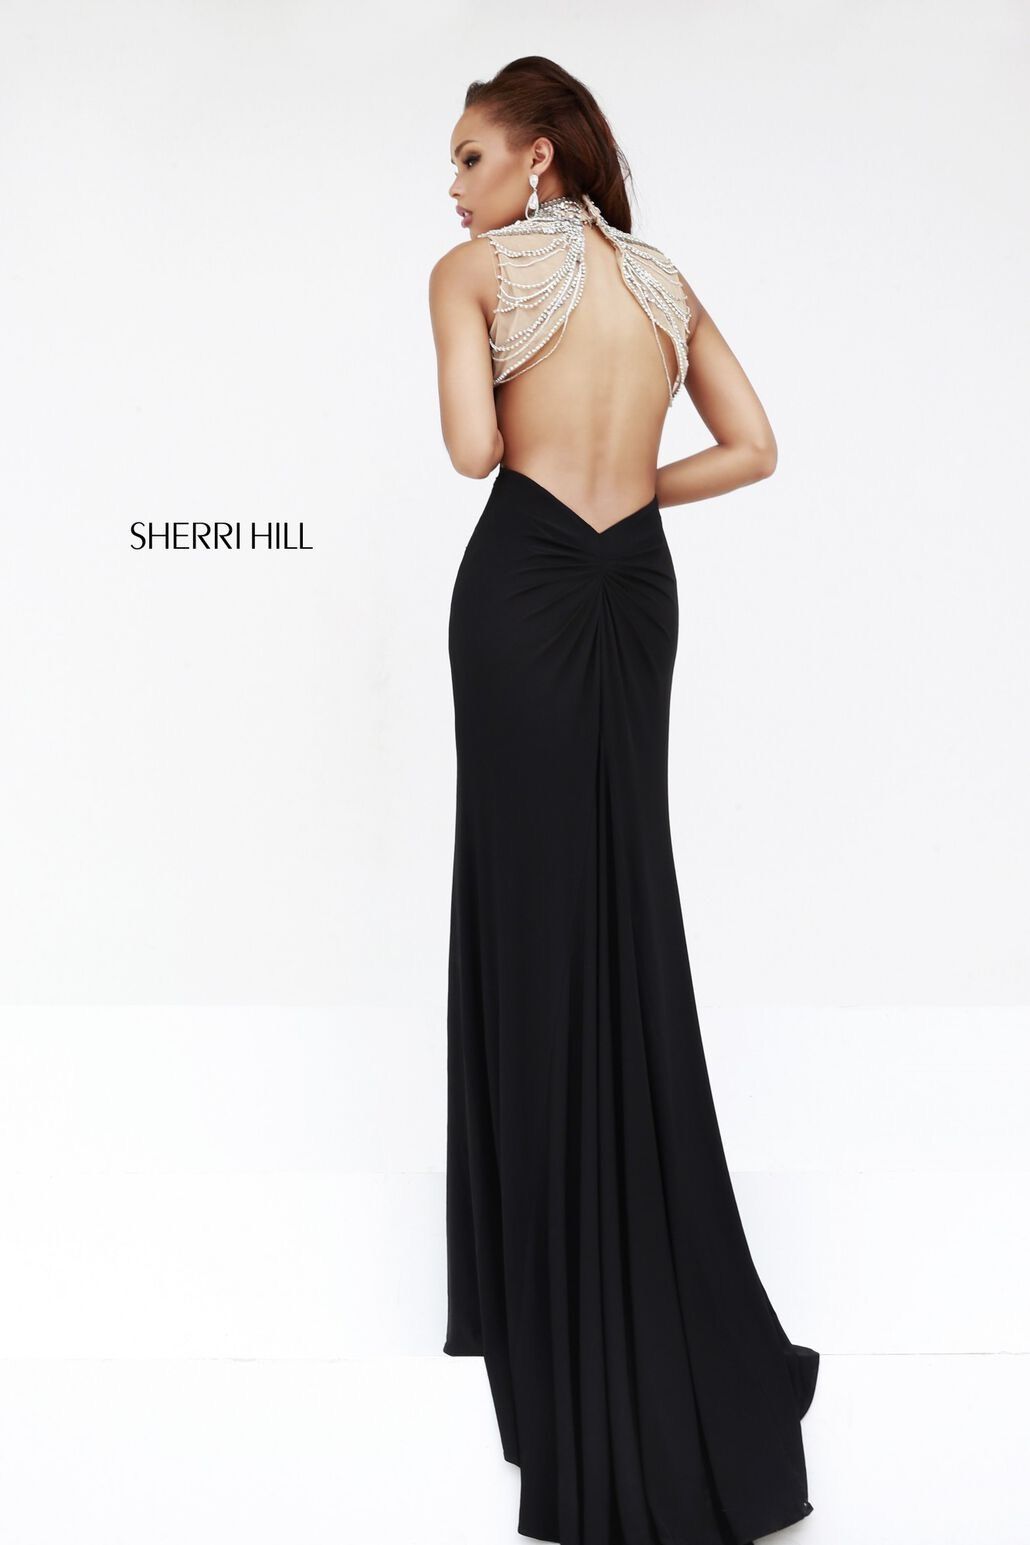 Style 21355 Sherri Hill Size 4 Prom High Neck Velvet Black Mermaid Dress on Queenly